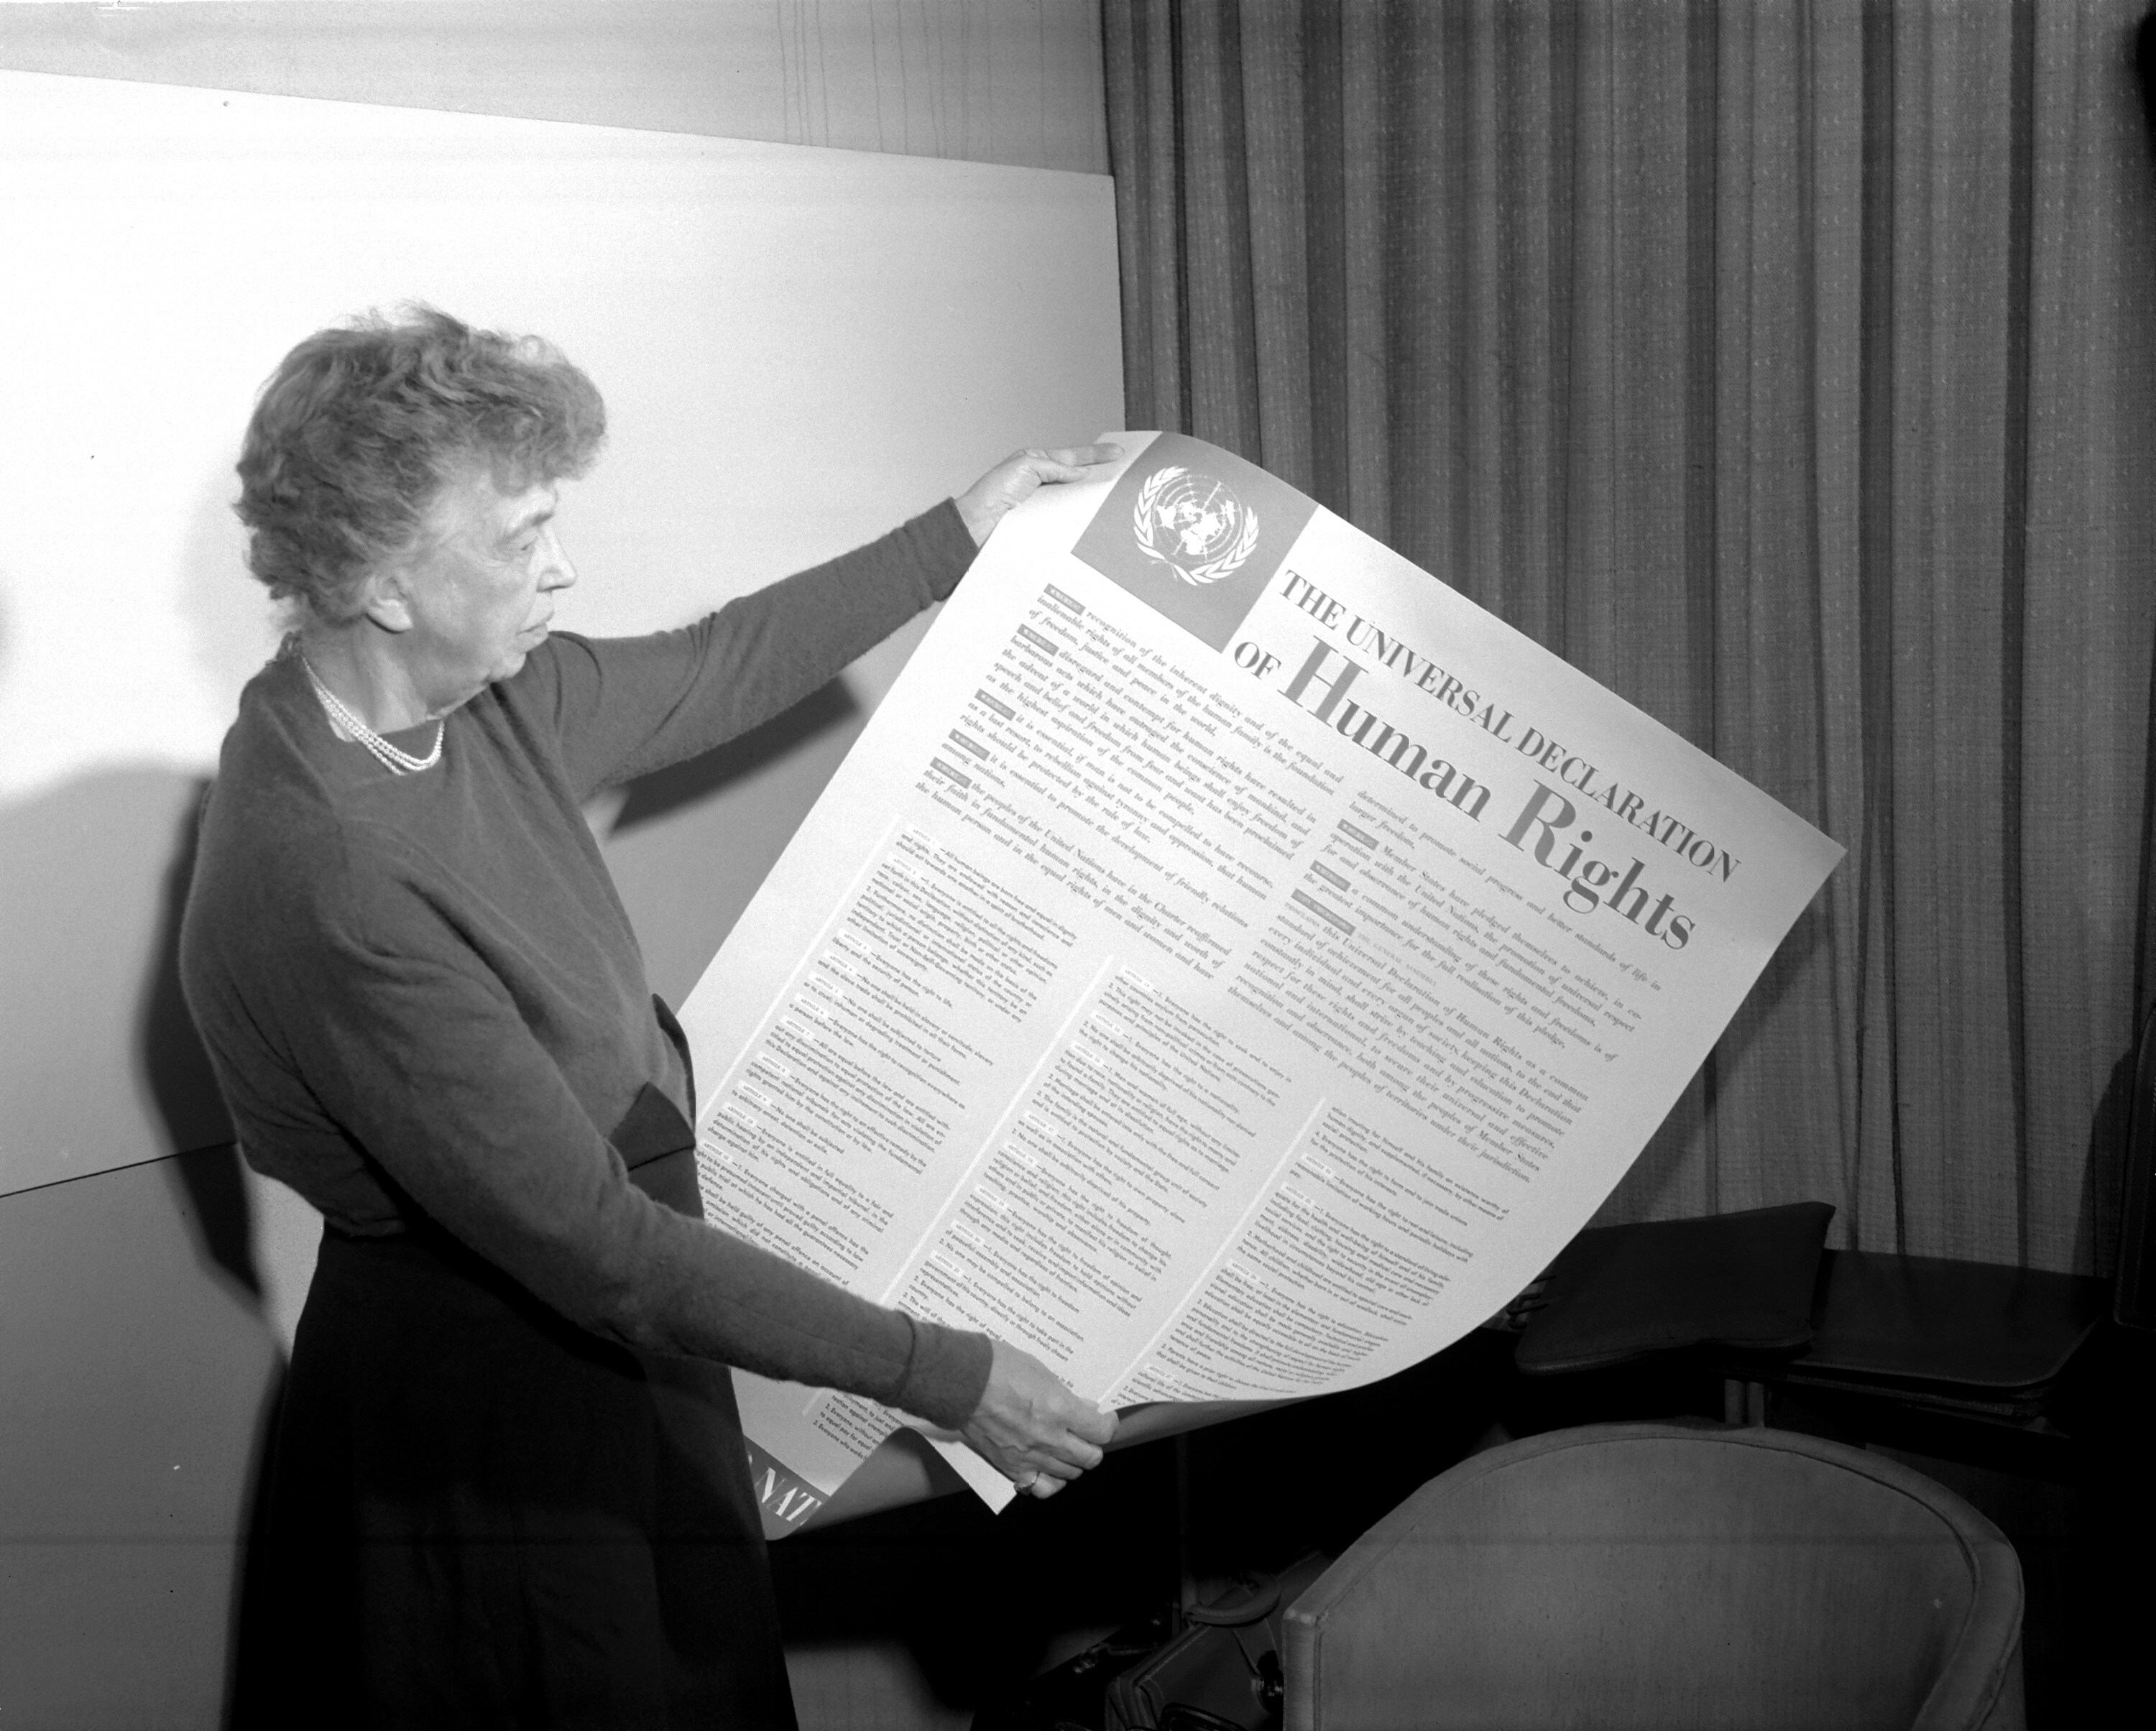 La signora Eleonor Roosevelt mostra un manifesto della Dichiarazione Universale dei Diritti Umani. La Dichiarazione è stata firmata a Parigi il 10 dicembre 1948. Nazioni Unite (Lake Success), New York, USA. Autore sconosciuto. Foto n. 1292 © courtesy UN Photo